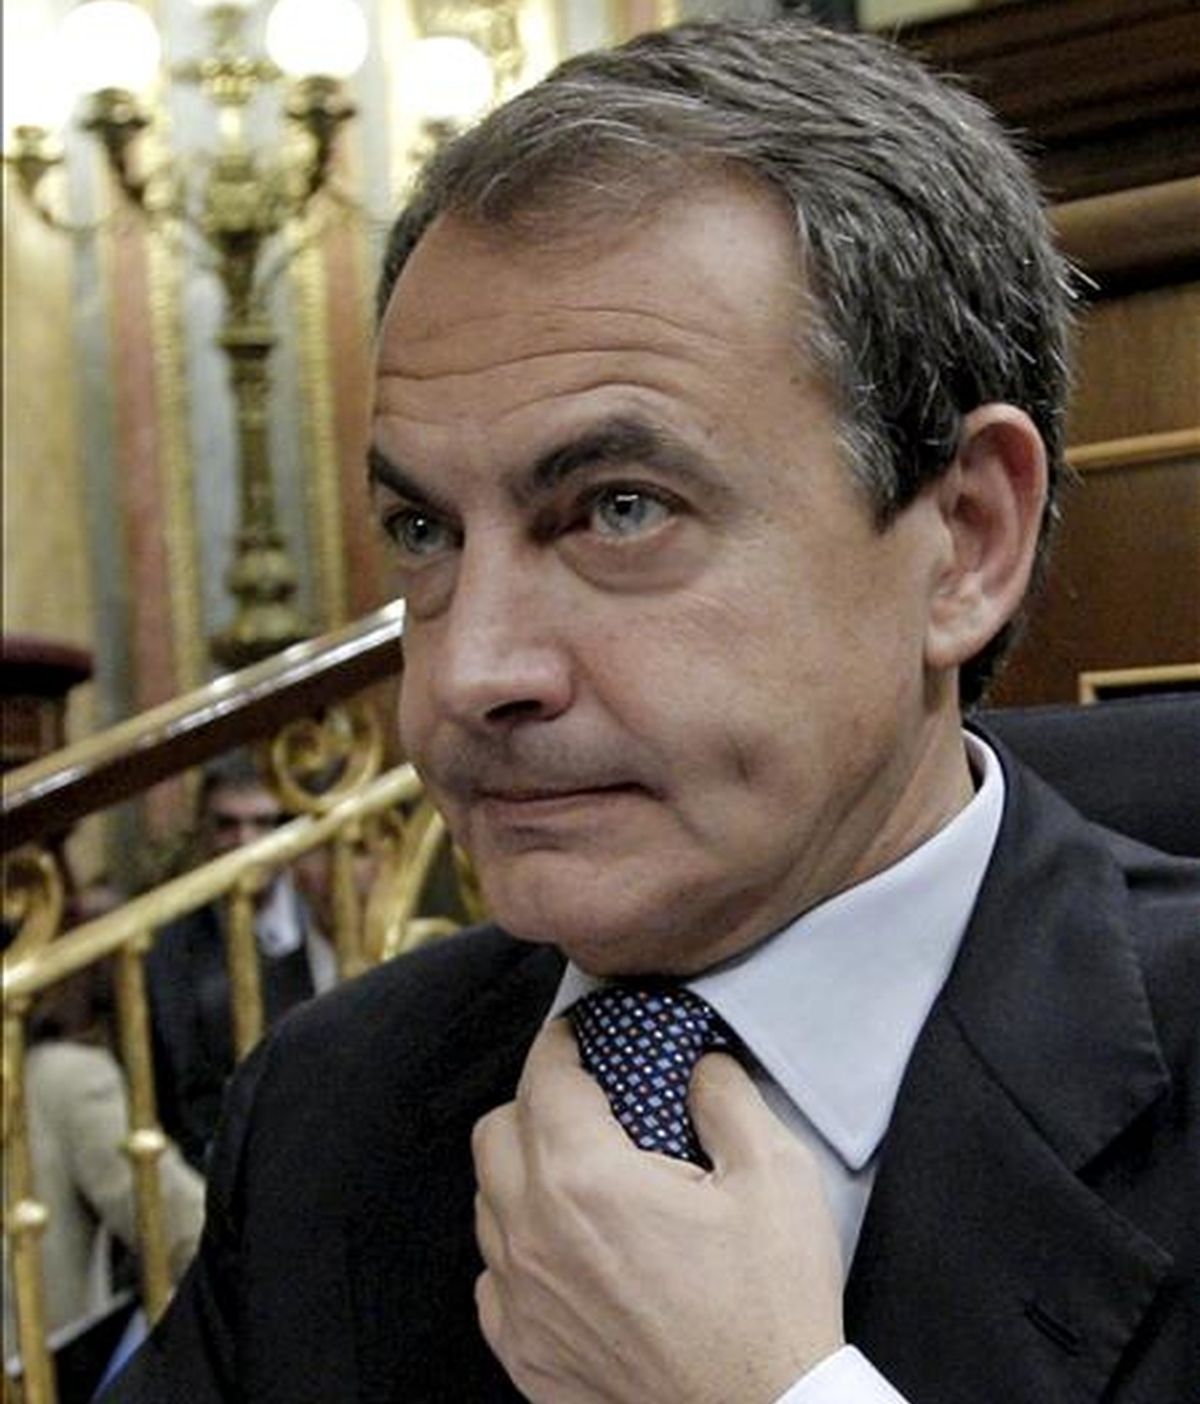 El presidente del Gobierno, José Luis Rodríguez Zapatero, durante la sesión de control al Ejecutivo celebrada hoy en el Congreso de los Diputados en la que ha anunciado una rebaja fiscal para las pymes, el fin de la prestación de 426 euros a partir de febrero y la privatización de la gestión de los aeropuertos de Barajas y el Prat. EFE